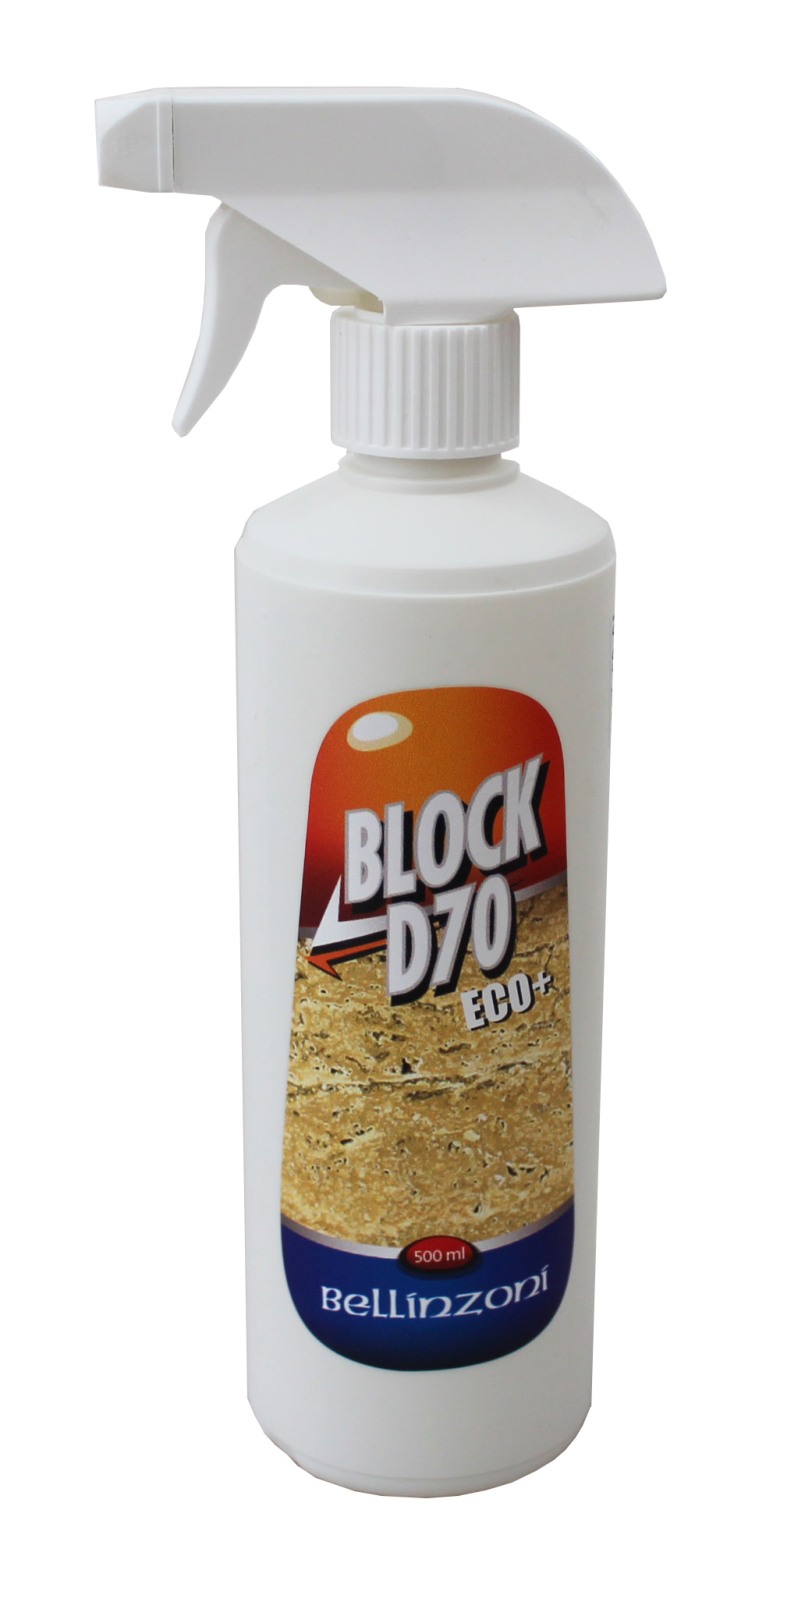 Bellinzoni - Block D70 / 500 ml